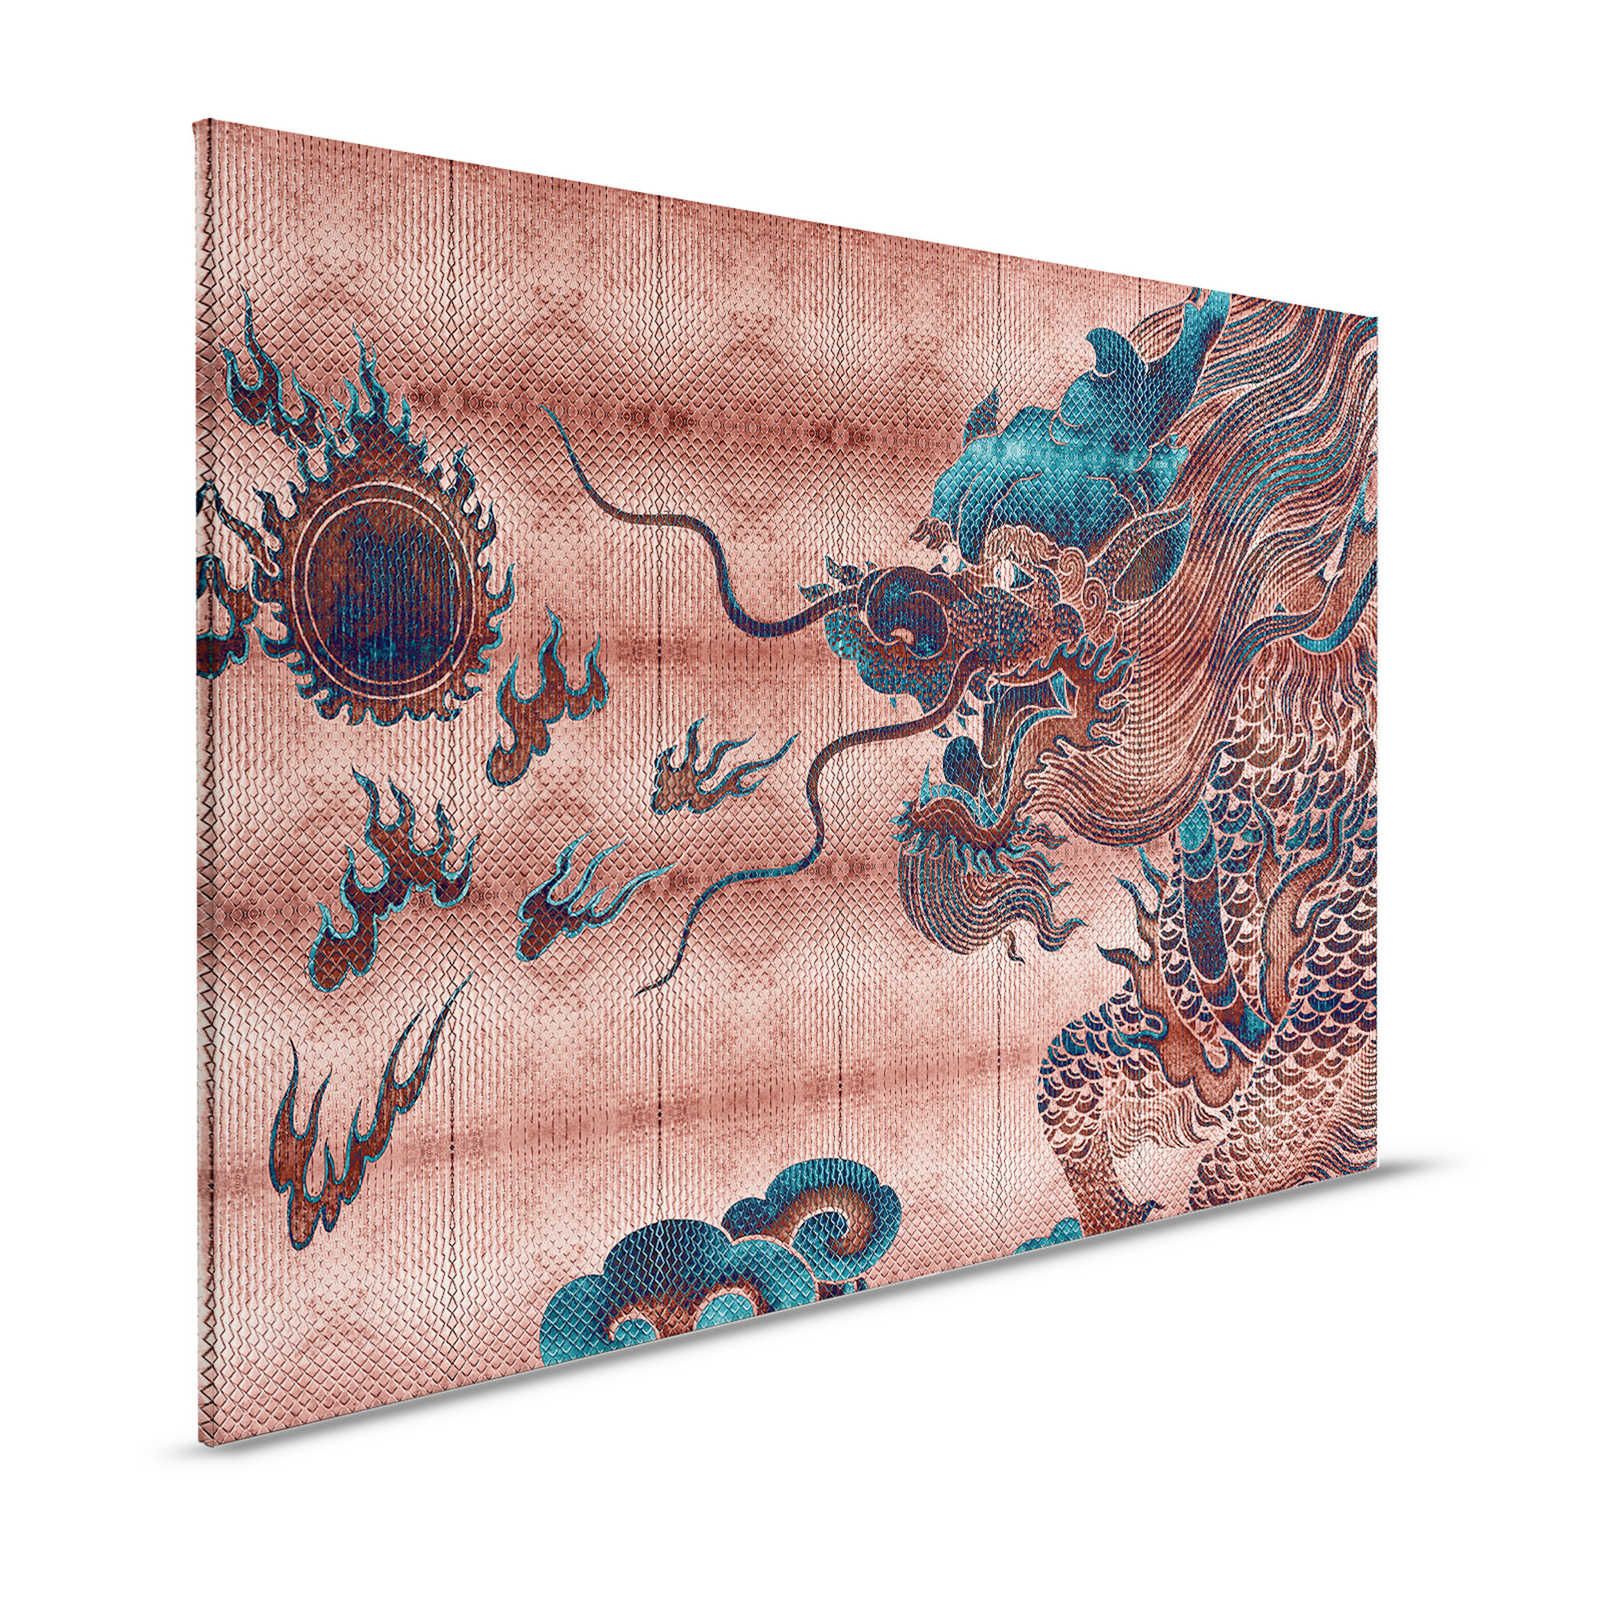 Shenzen 1 - Leinwandbild Drache Asian Syle mit Metallic Farben – 1,20 m x 0,80 m
